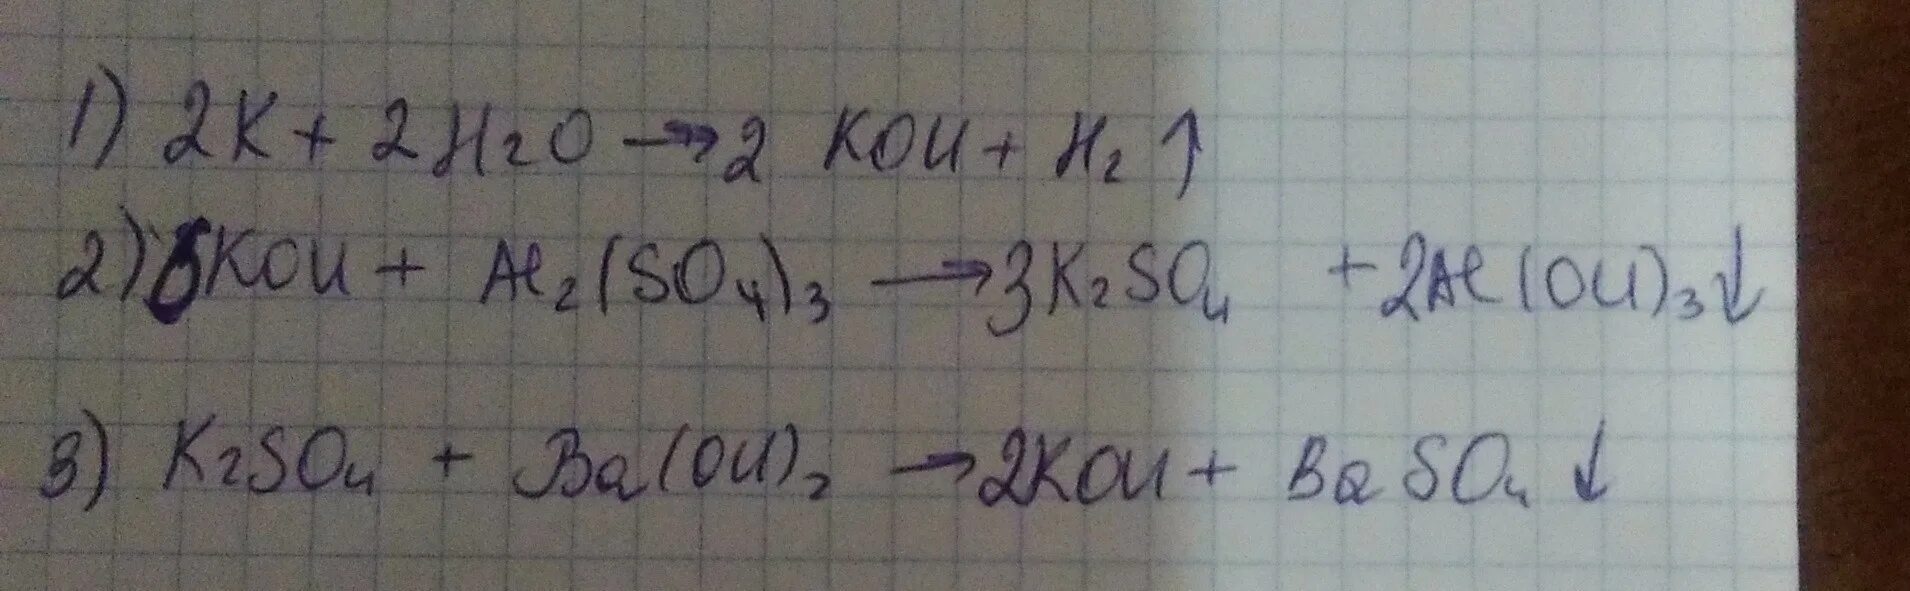 K2so4 Koh. K Koh k2so4 baso4. K-Koh цепочка. K → Koh → k2so4 → KCL. Осуществите превращения k2so3 so2